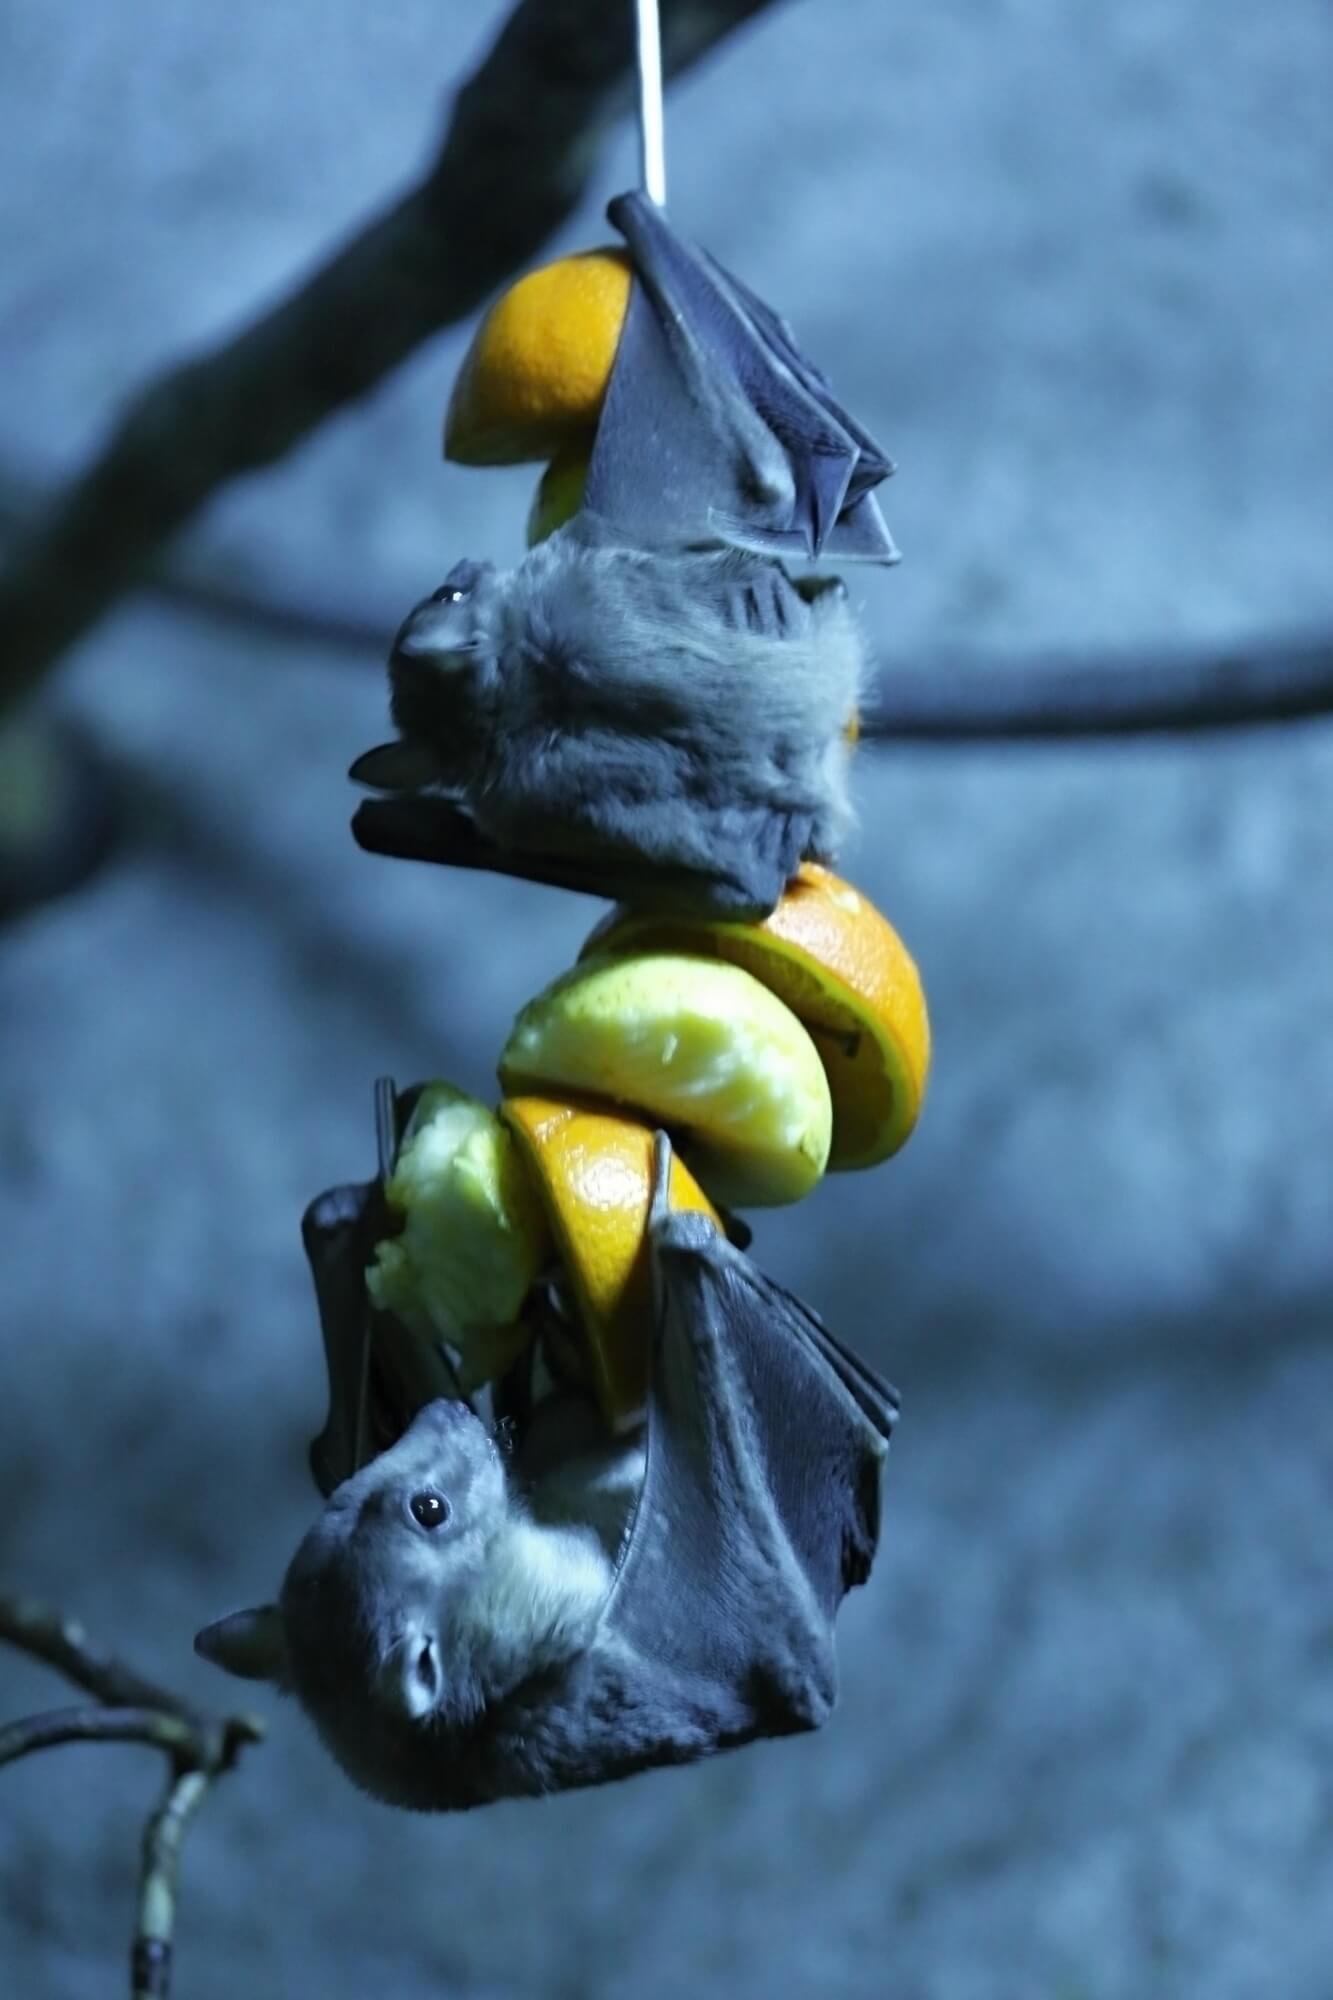 עטלף פירות מצרי.  <a href="https://depositphotos.com. ">המחשה: depositphotos.com</a>